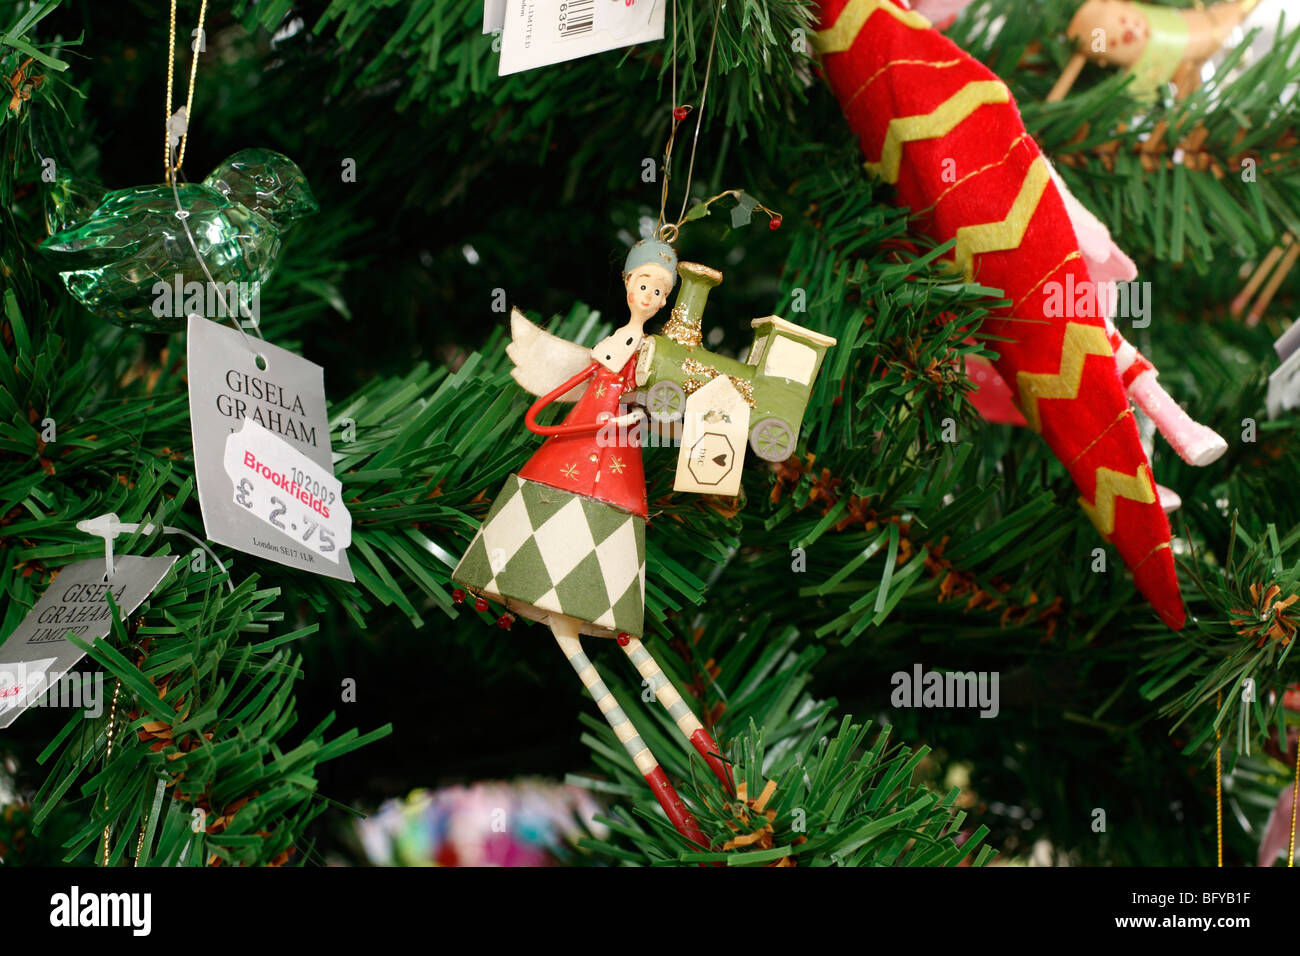 Weihnachtsschmuck in einem Geschäft auf einem Weihnachtsbaum - Engel mit  Zug Gisela Graham - Preis Stockfotografie - Alamy